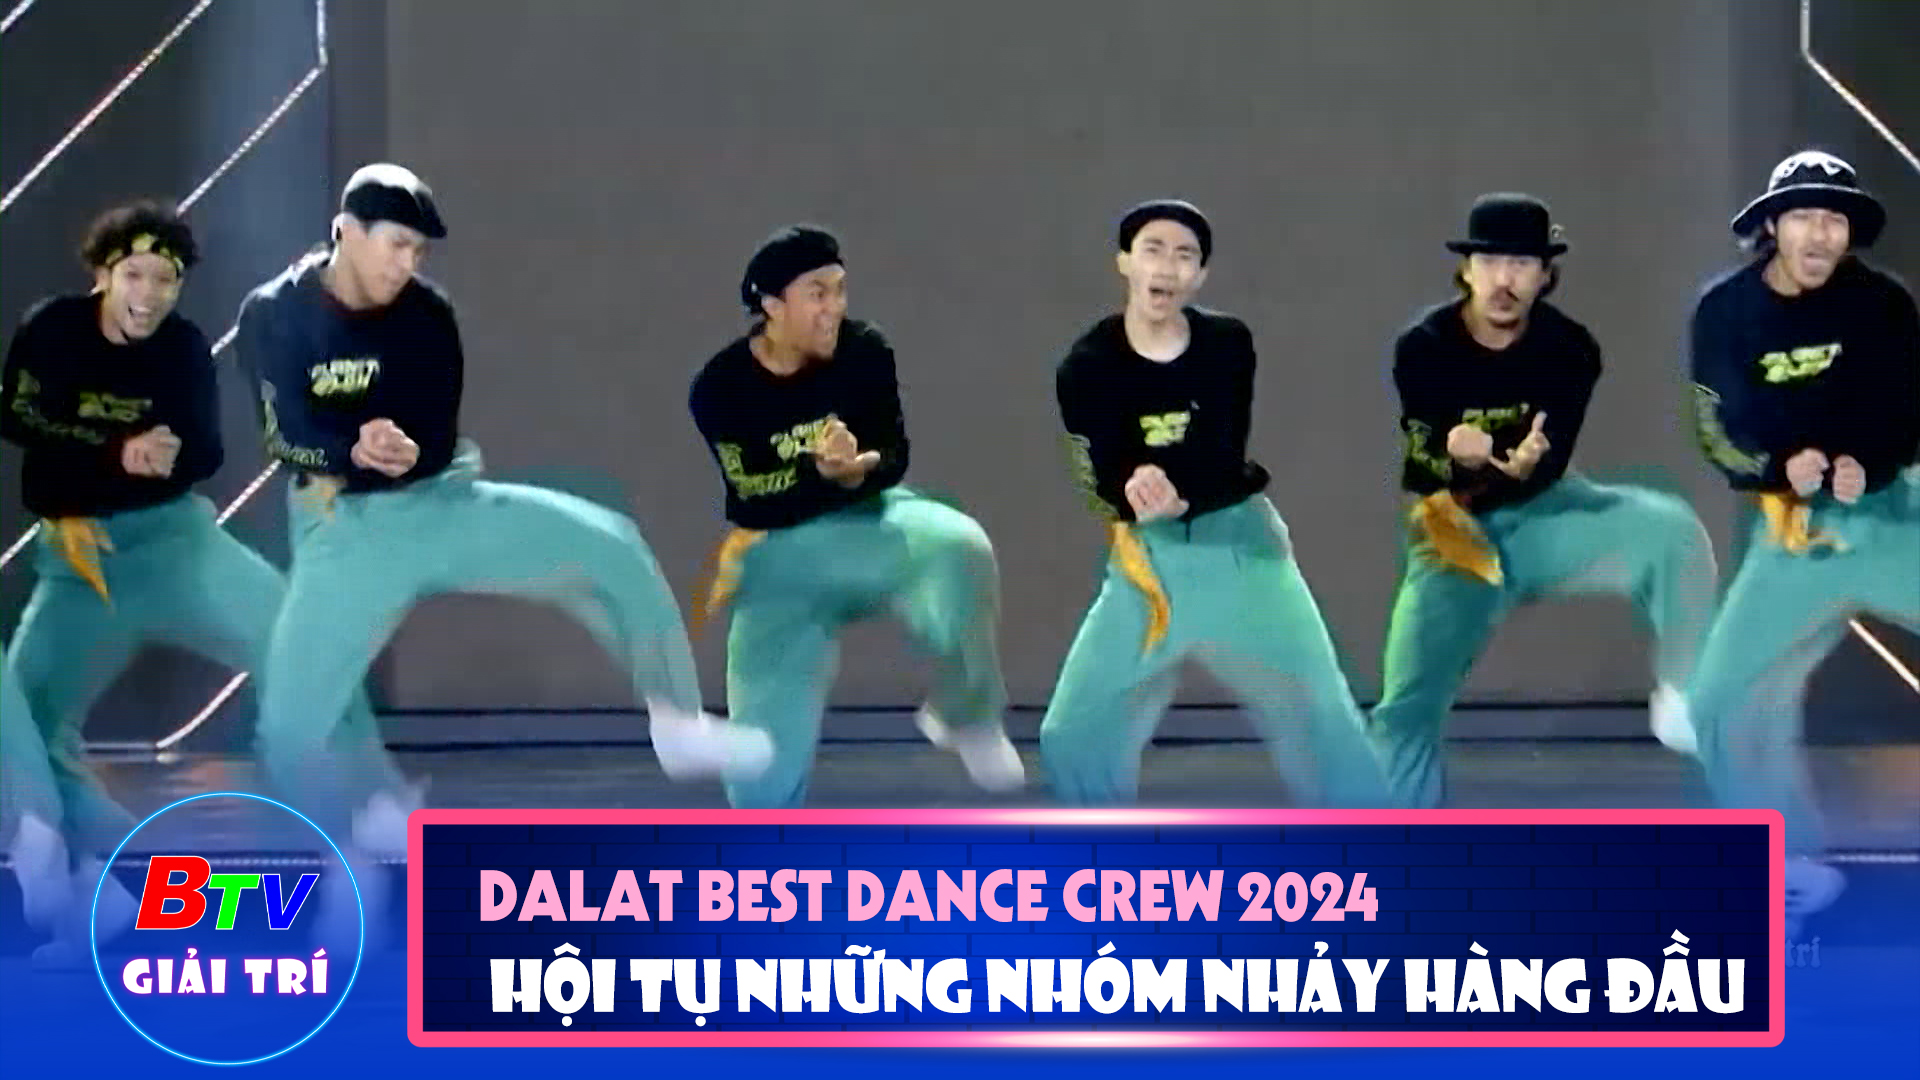 Dalat Best Dance Crew 2024 - Hoa Sen Home International Cup - Nơi hội tụ của những nhóm nhảy hàng đầu | Điểm hẹn giải trí 